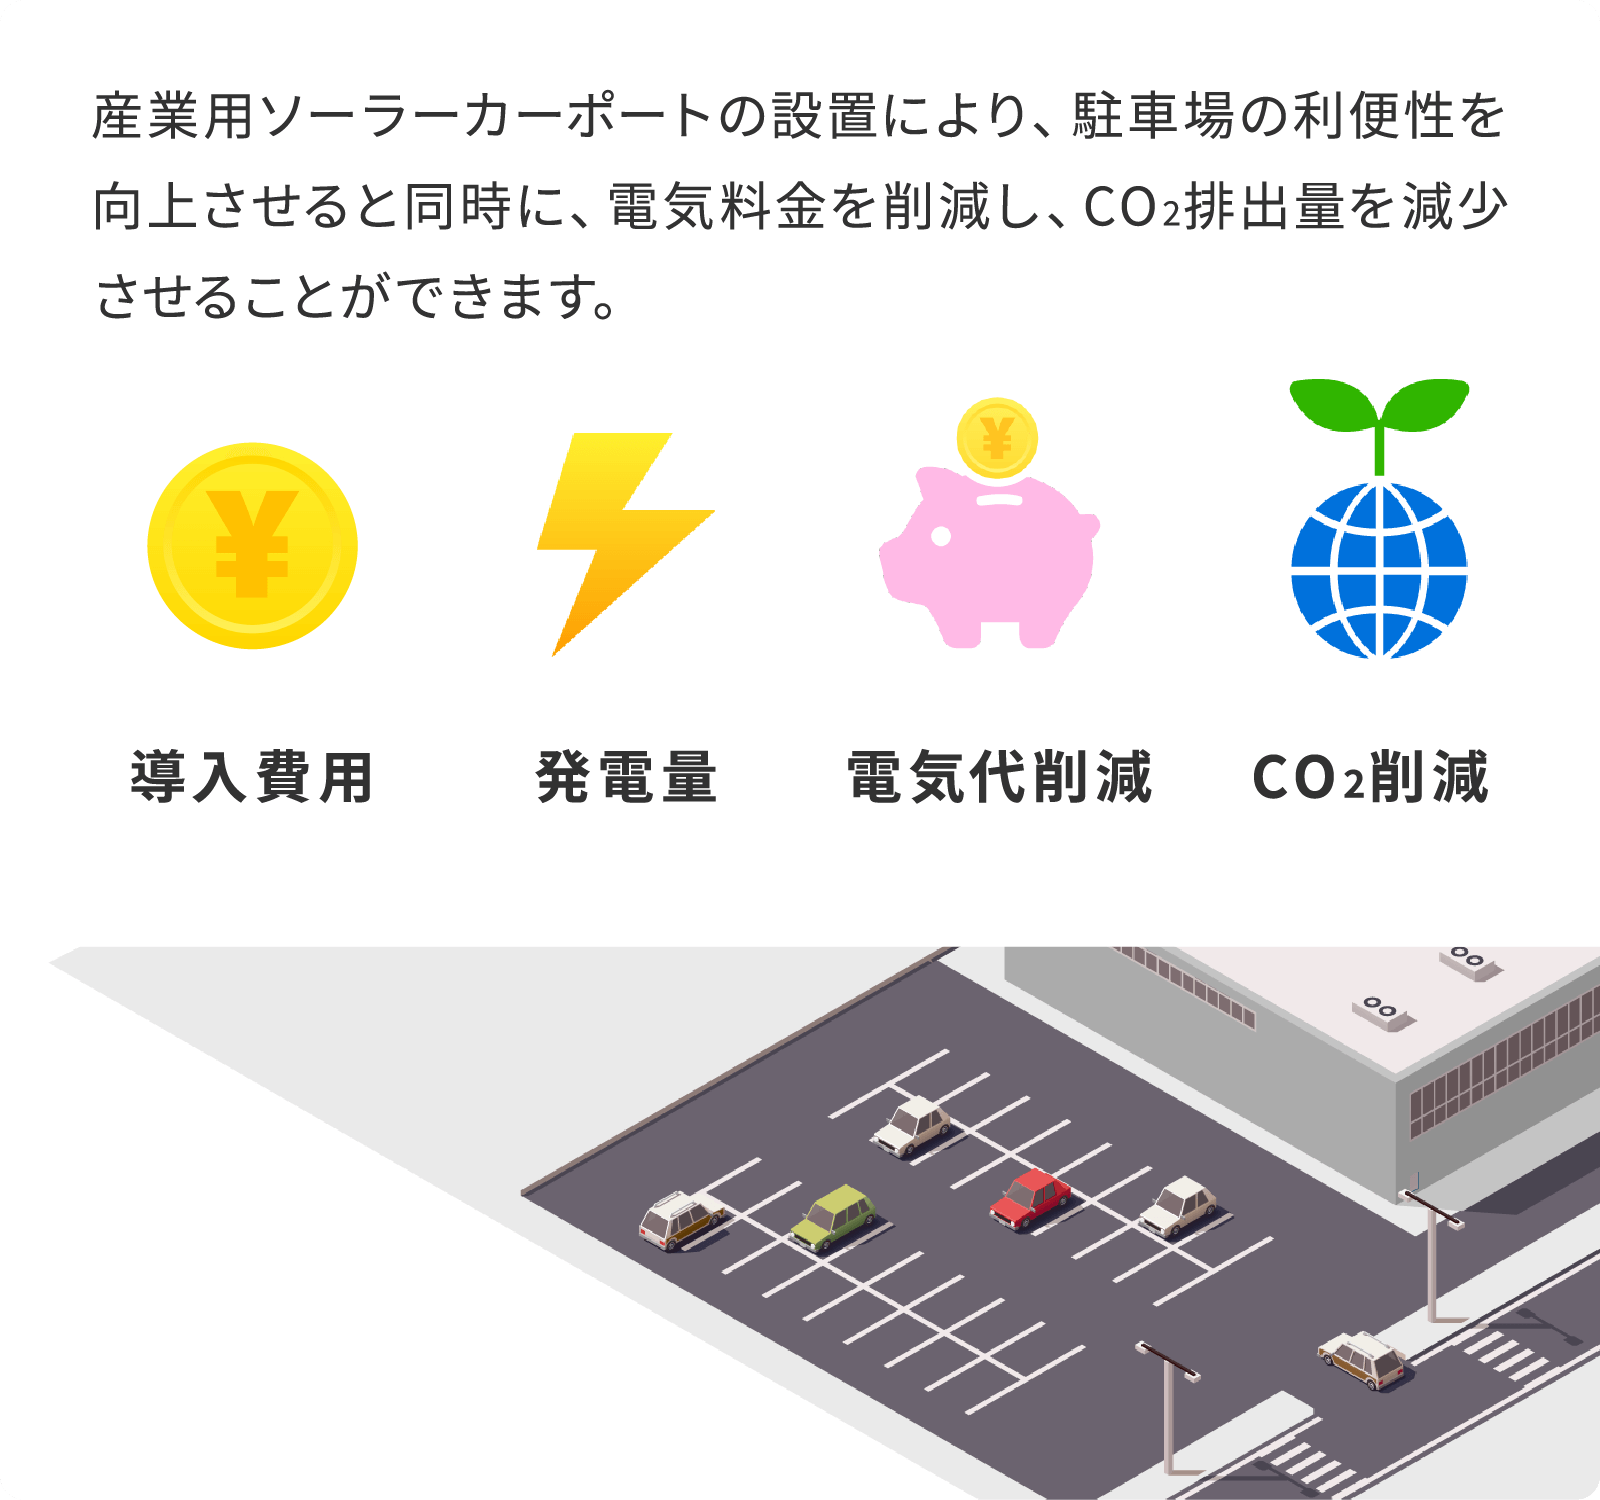 ソーラーカーポートの設置により、駐車場の利便性を向上させると同時に、電気料金を削減し、CO2排出量を減少させることができます。